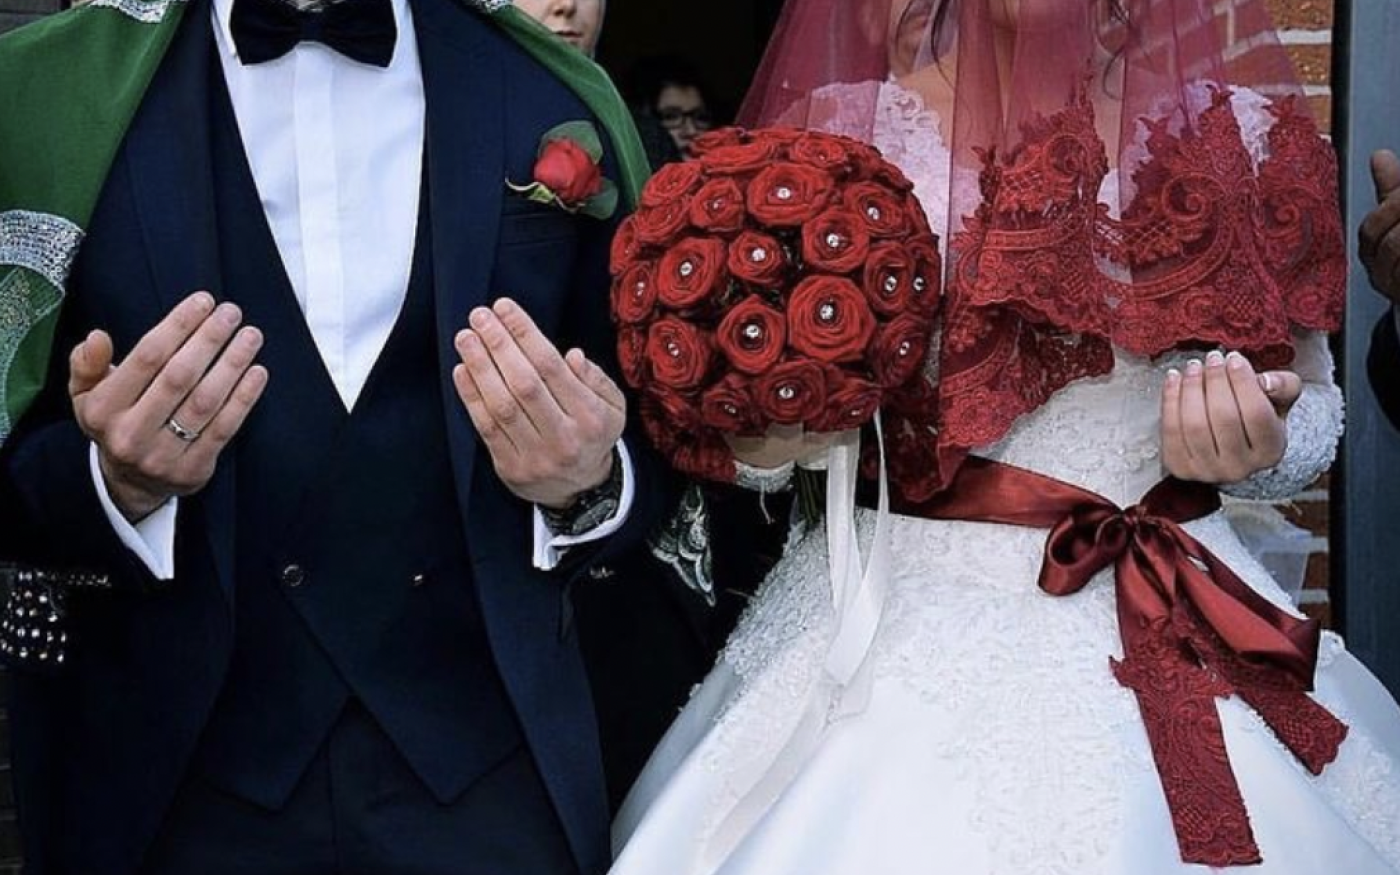 Attacher un ruban rouge à la taille de la mariée est l’une des coutumes nuptiales les plus courantes de Turquie (capture d’écran/Instagram)